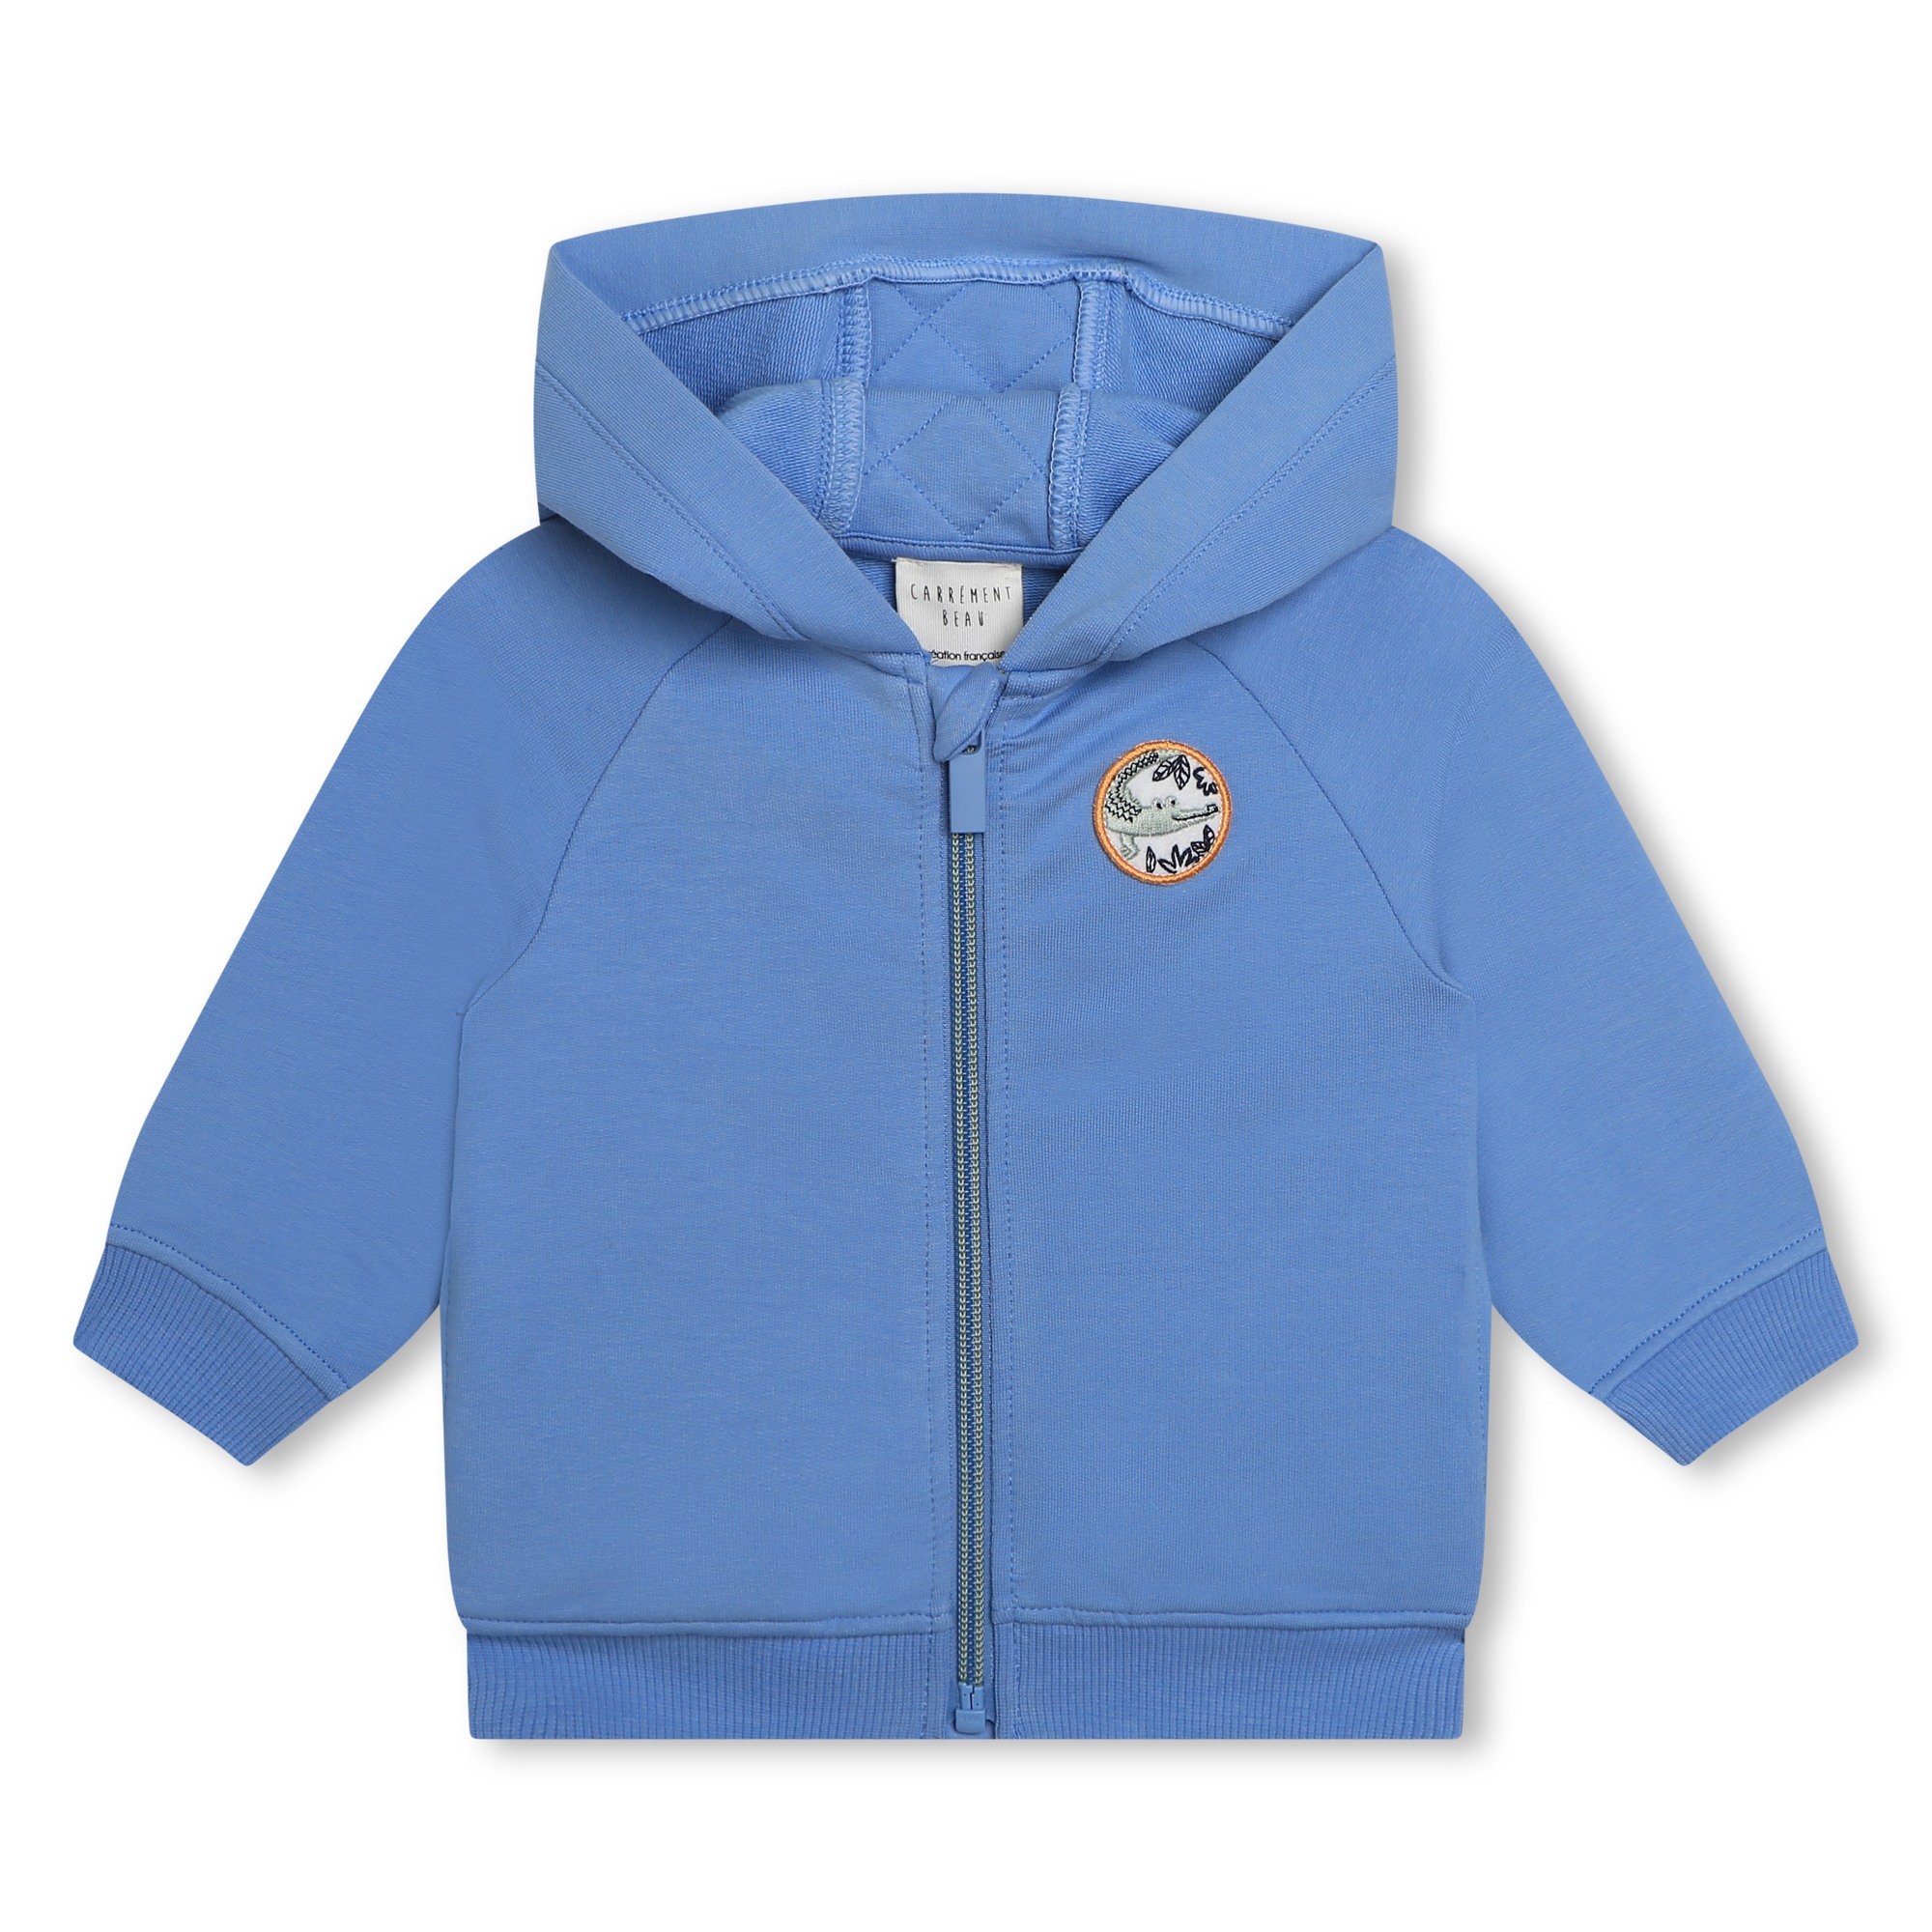 Zip-up fleece sweatshirt CARREMENT BEAU for BOY